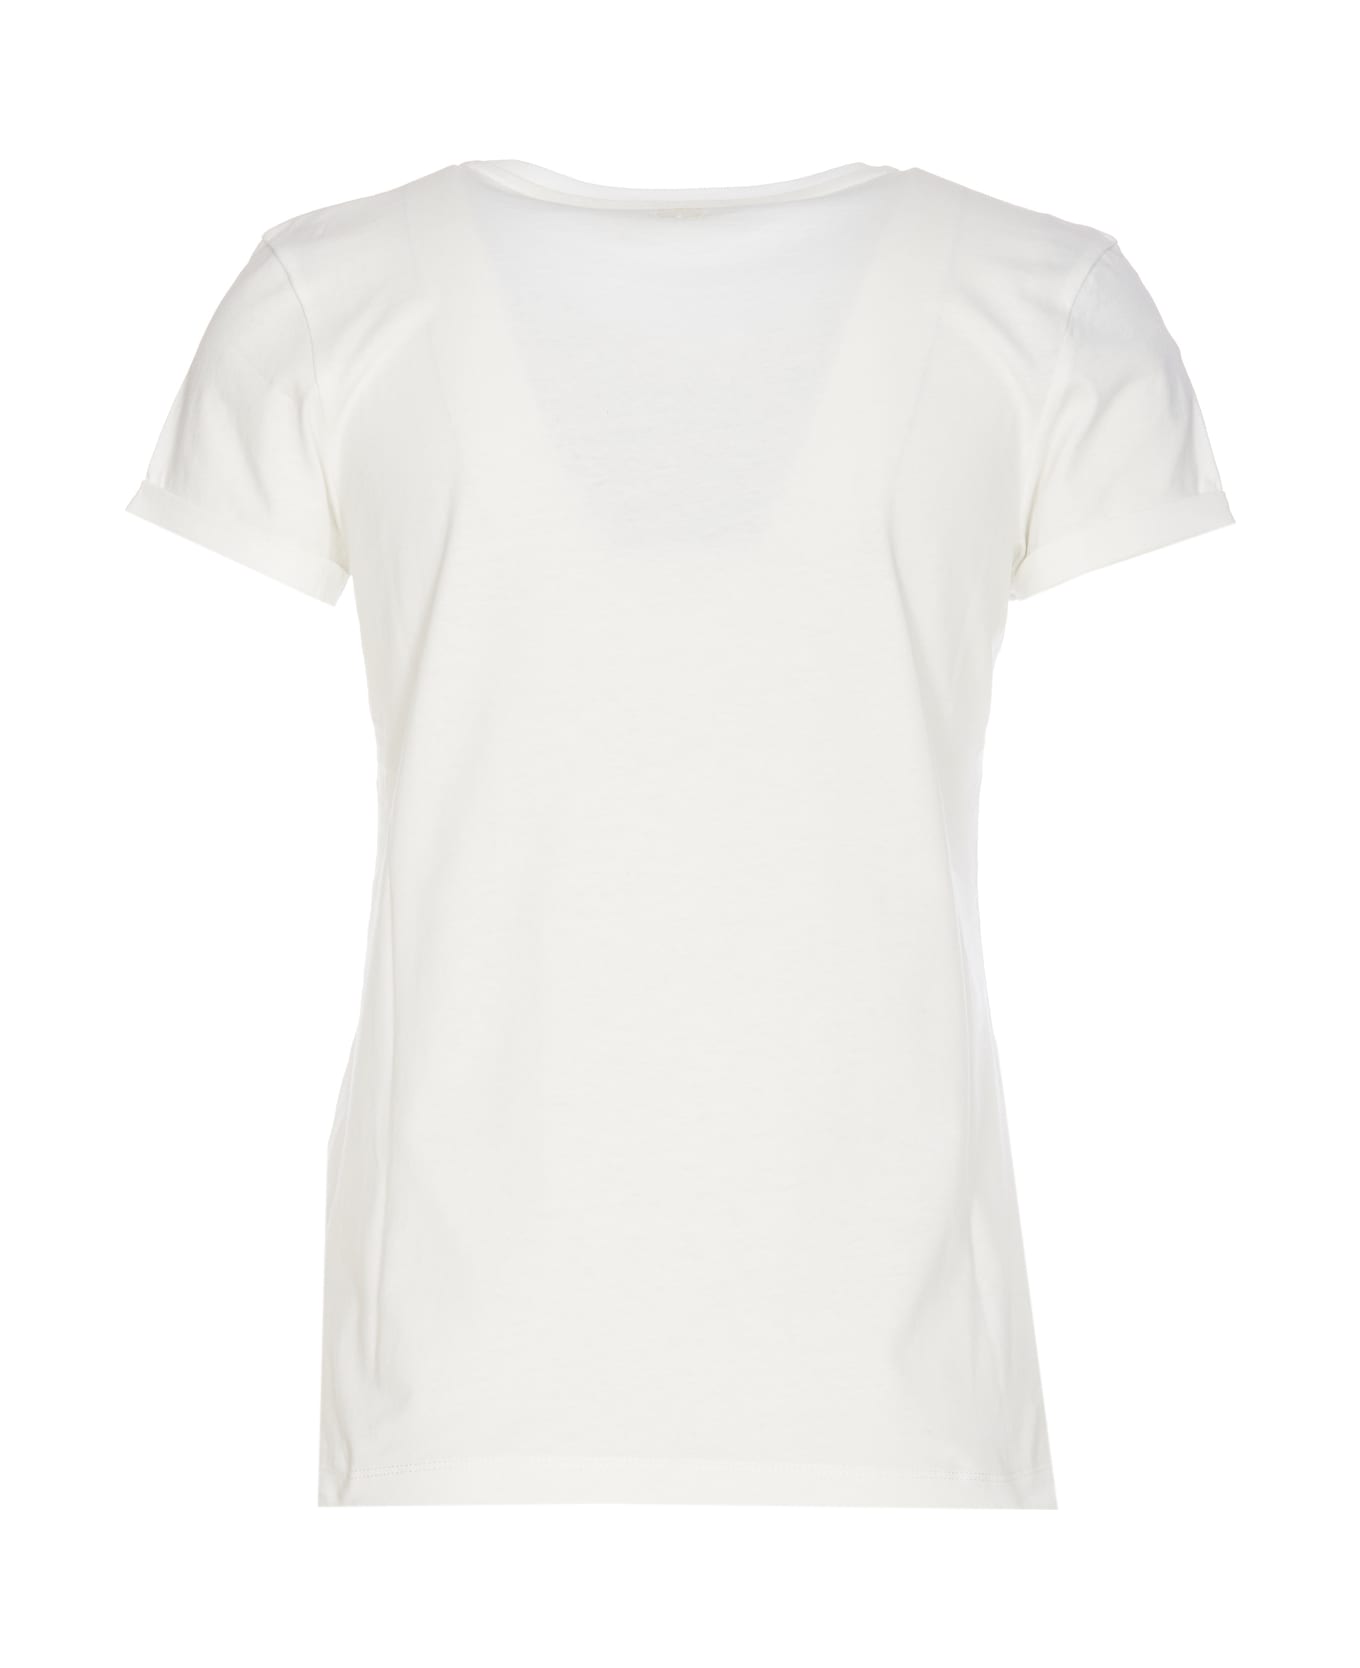 TwinSet T-shirt - White